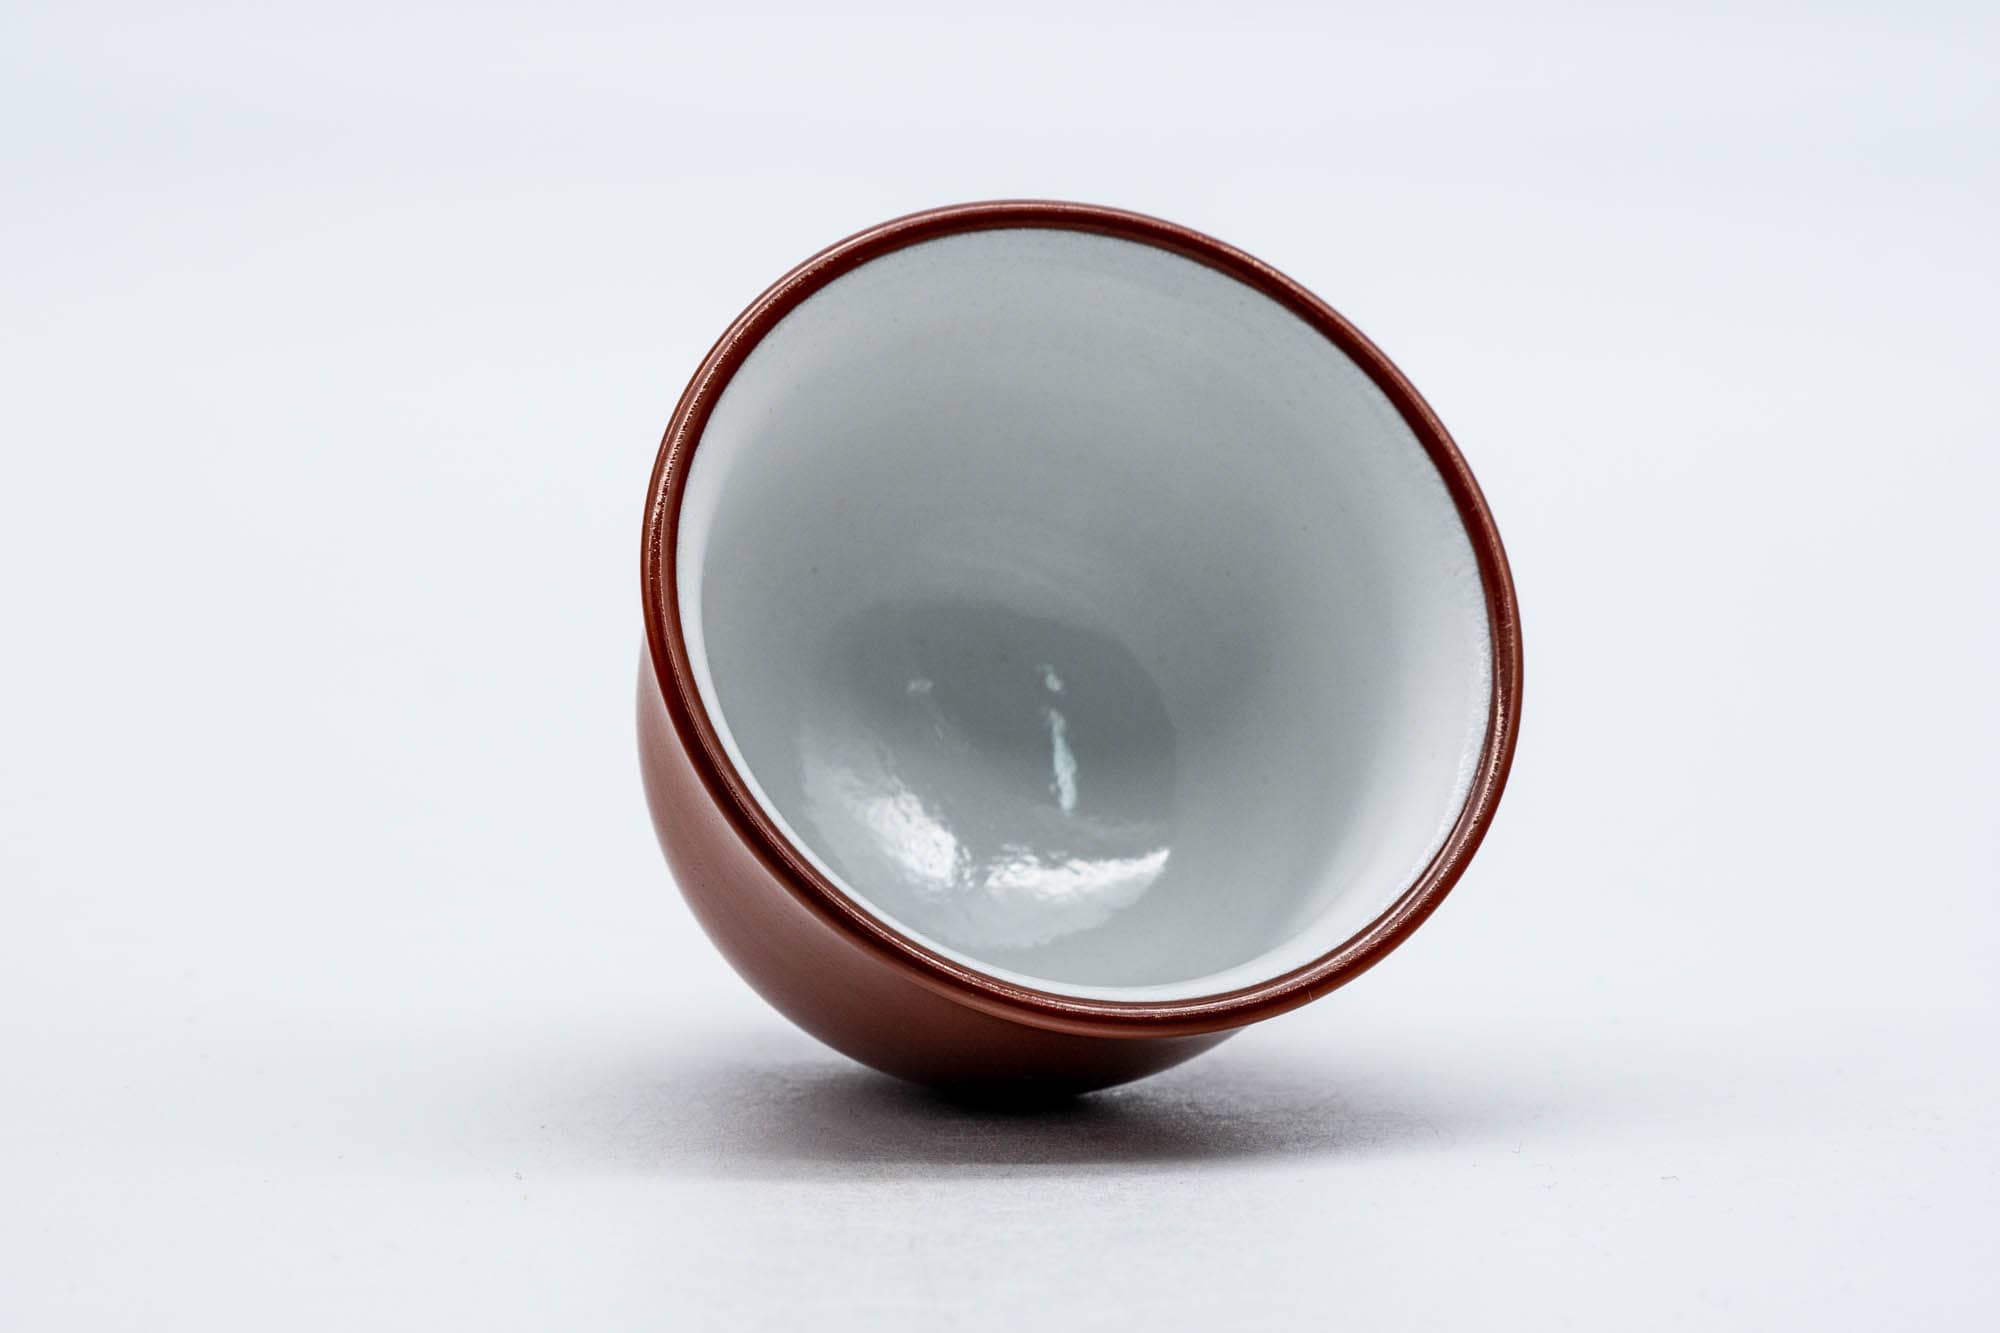 Japanese Teacup - 高資窯 Takasuke Kiln - Red Shudei White Inner-Glazed Tokoname-yaki Guinomi - 50ml